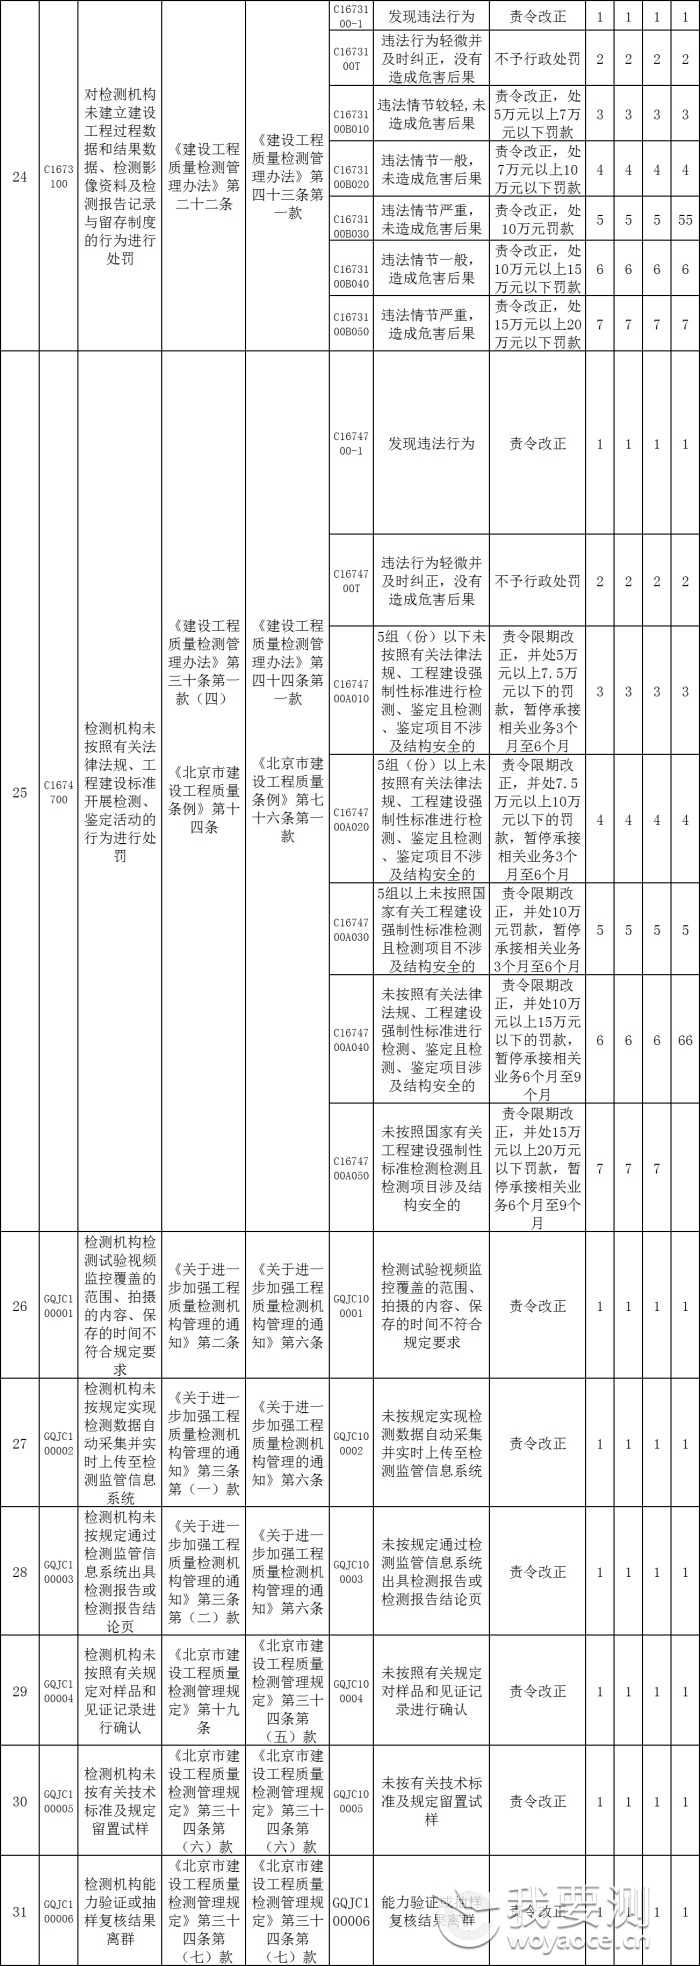 北京市建设工程质量检测机构及从业人员违法违规行为记分标准4.png